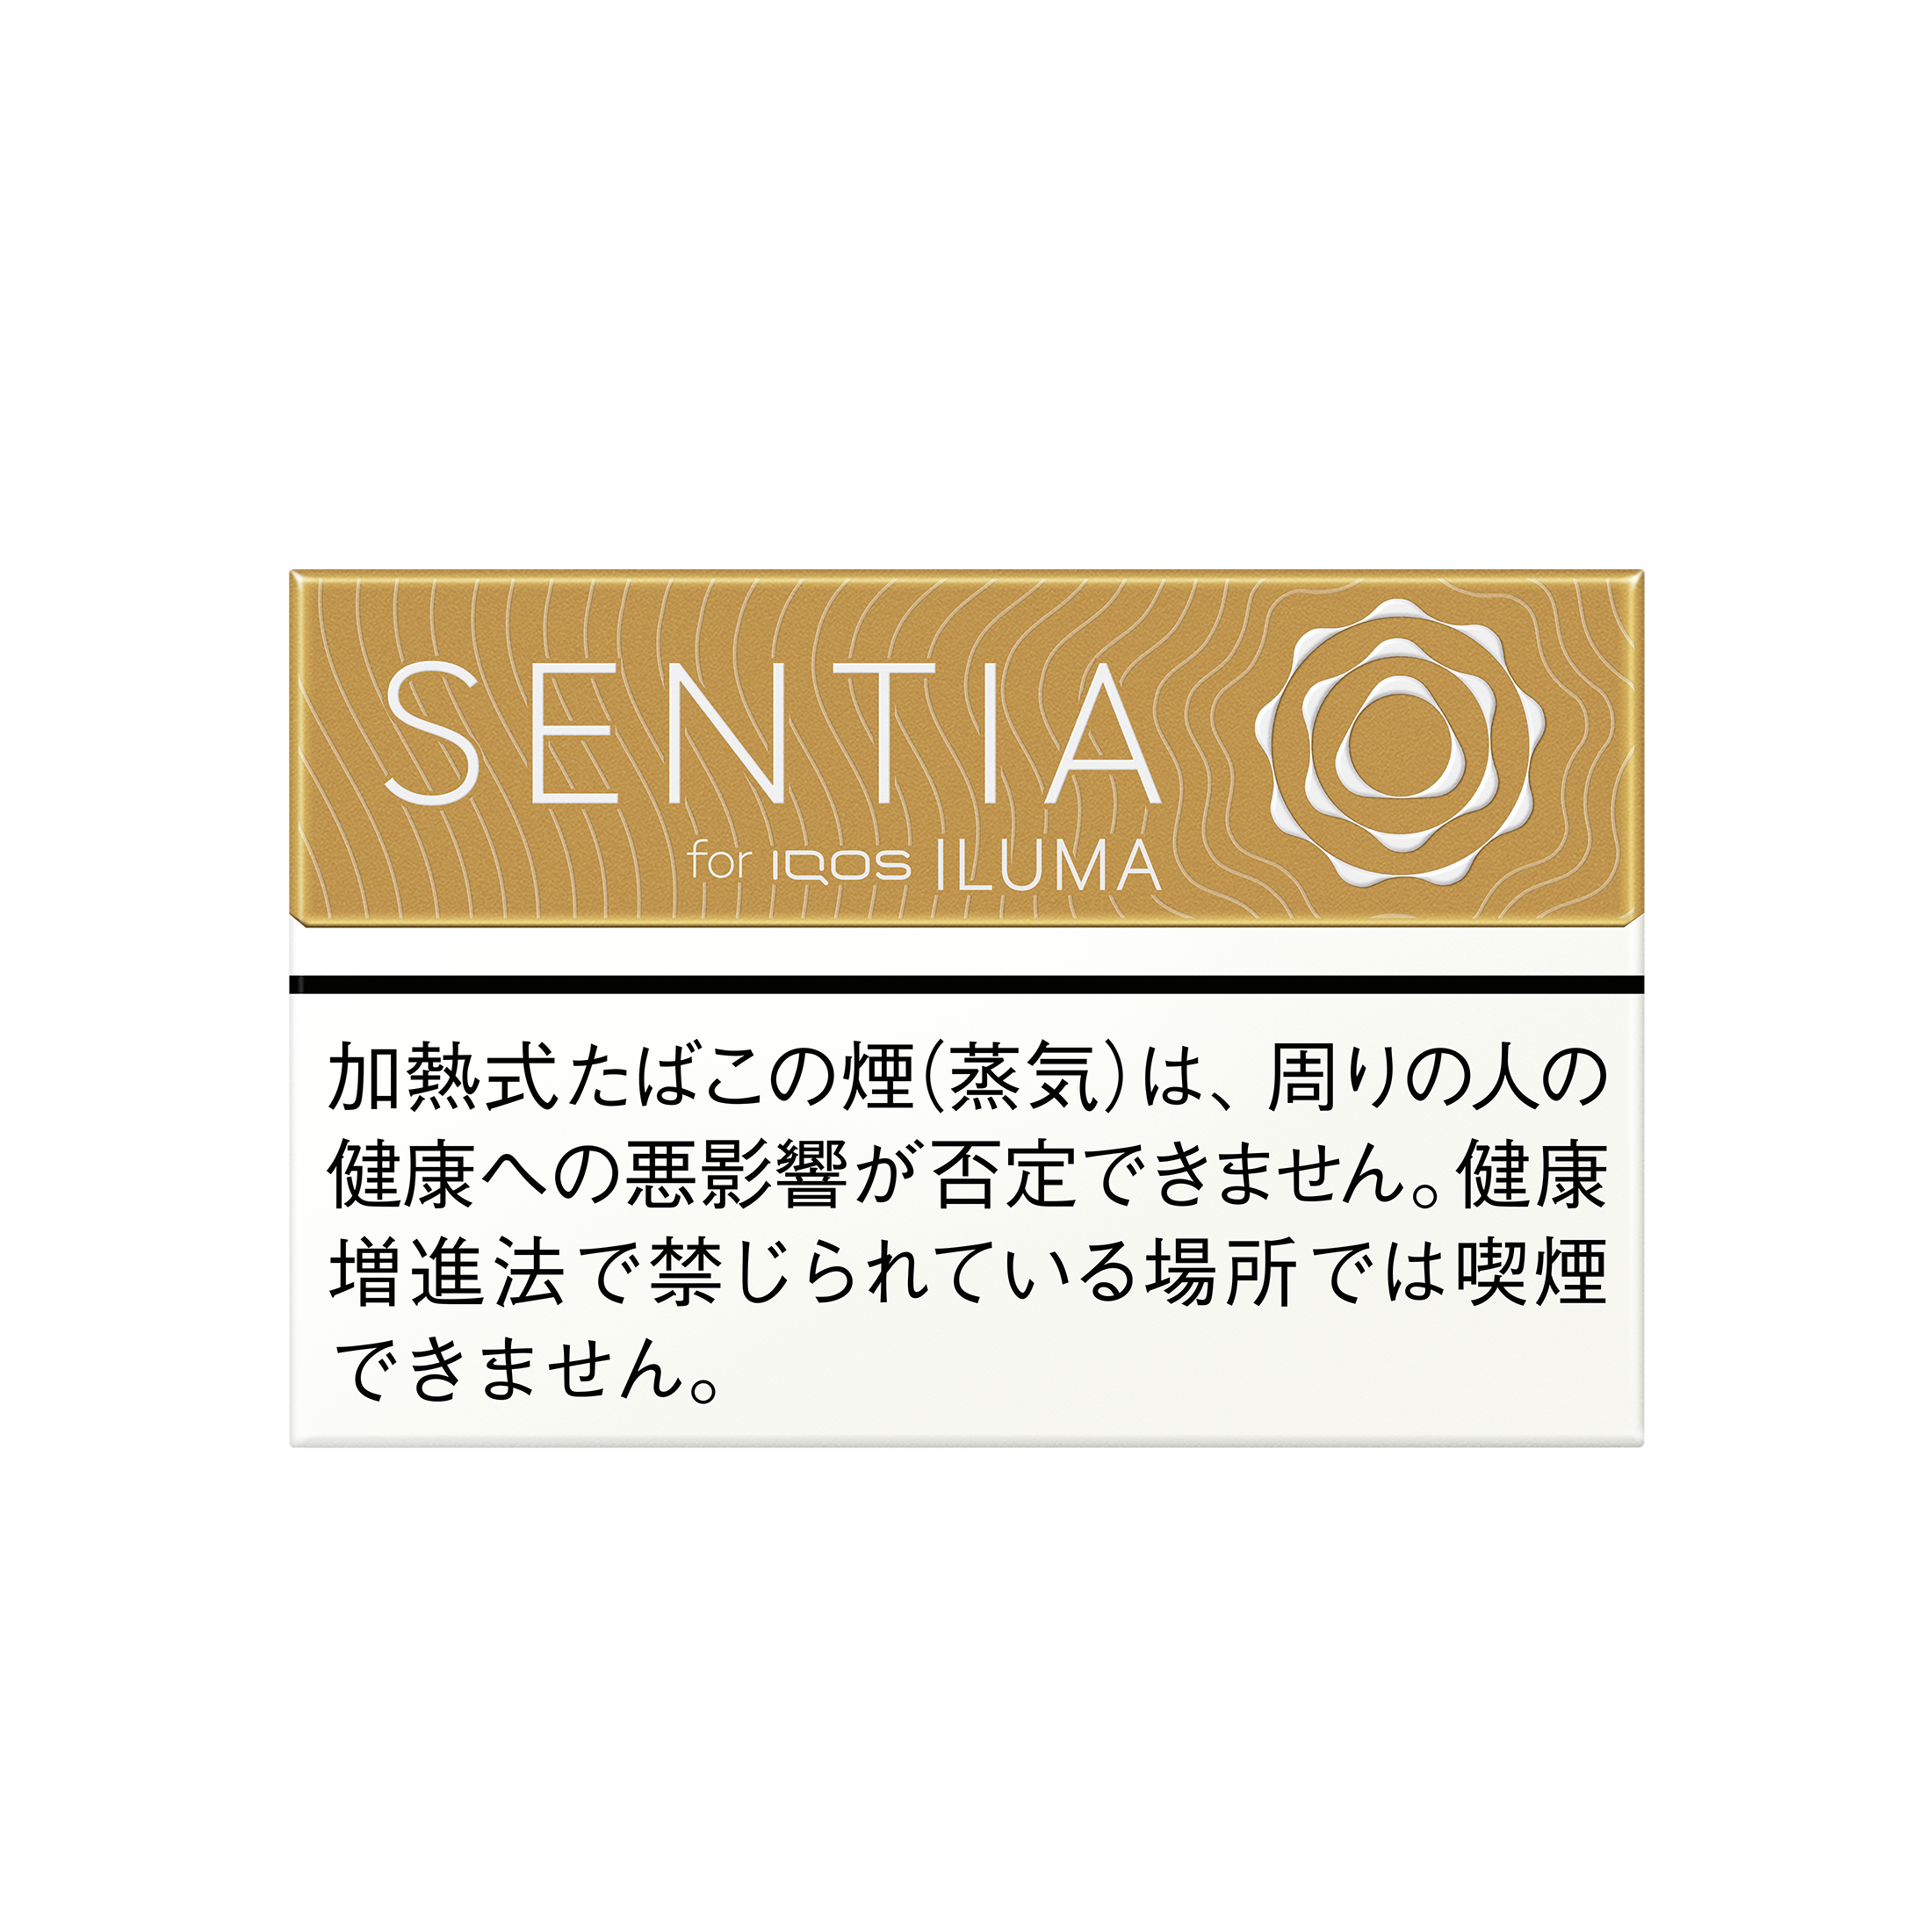 加熱式たばこ IQOS ILUMA（イルマ）専用たばこスティック「SENTIA（センティア）」のラインナップに加わった「センティア バランスド ゴールド」。